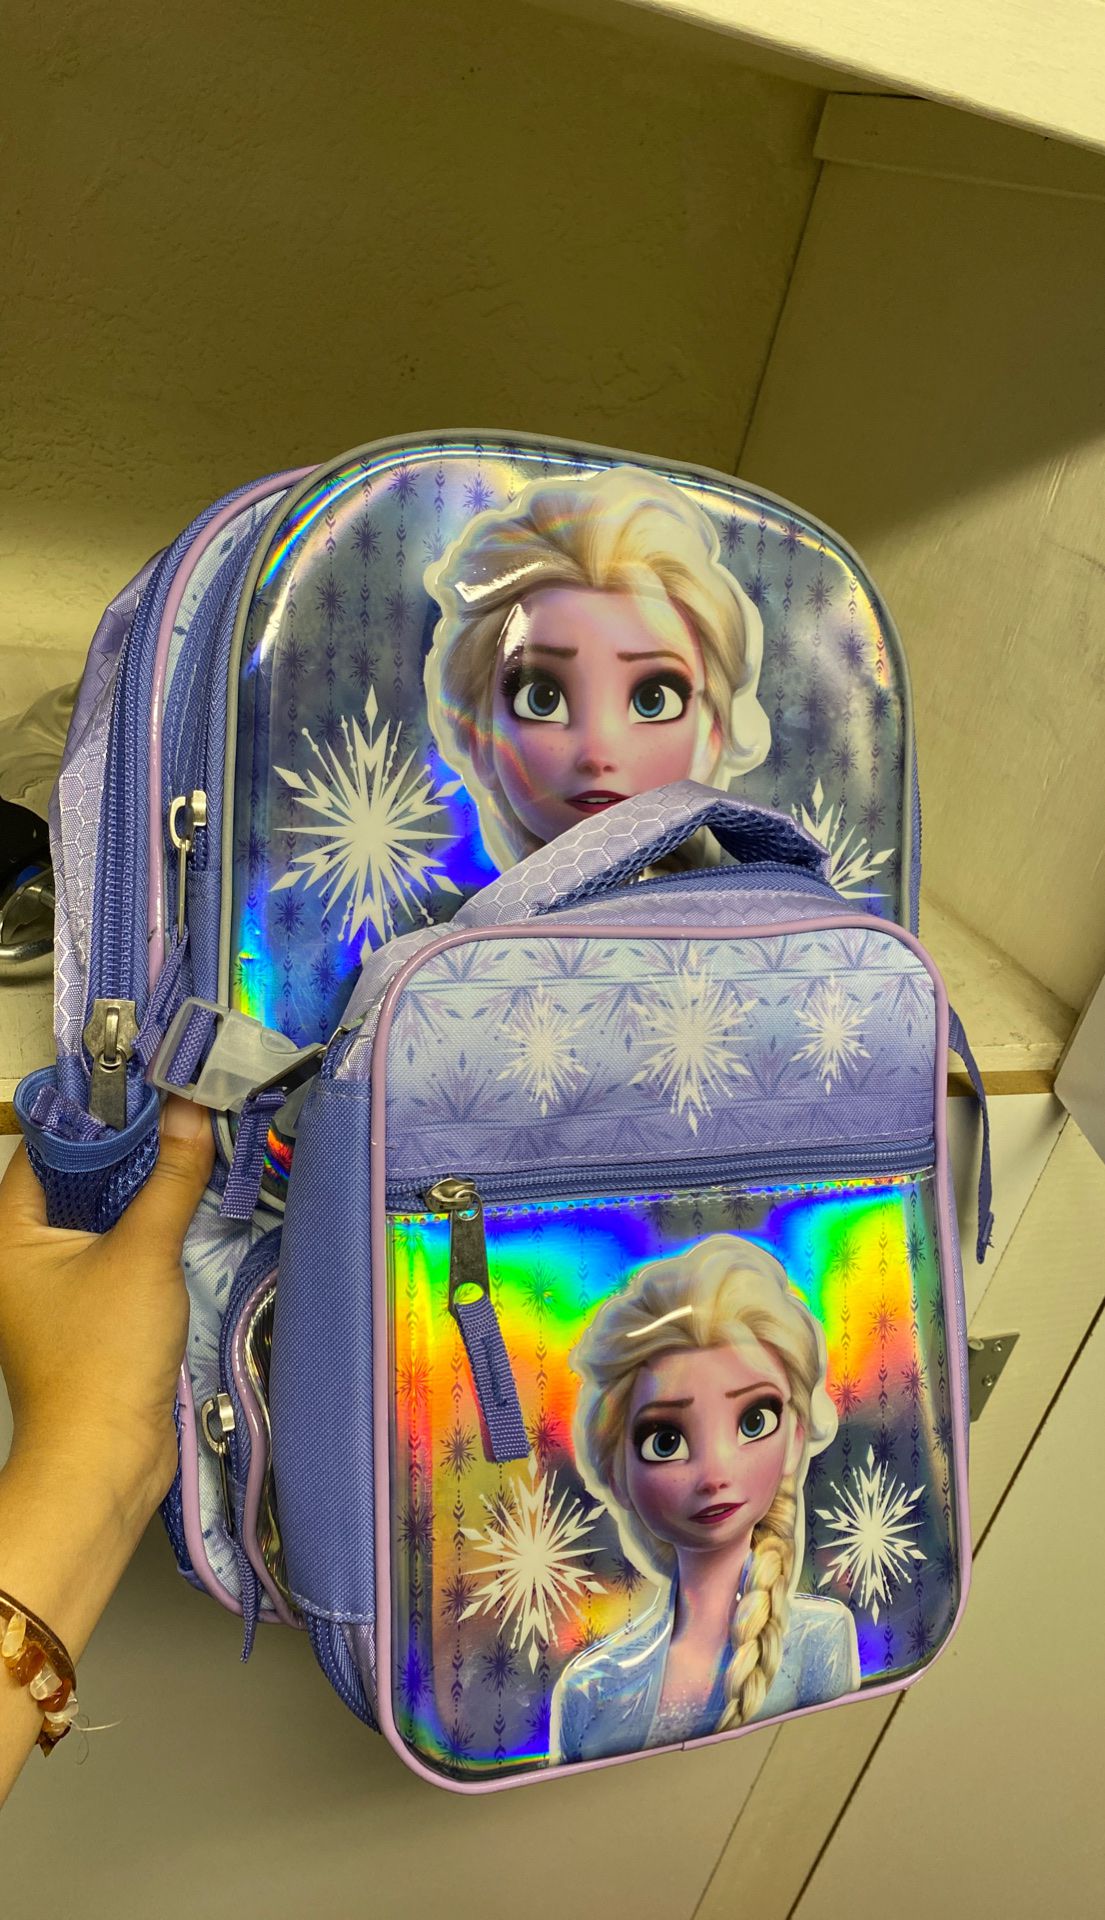 Brand new Elsa backpack